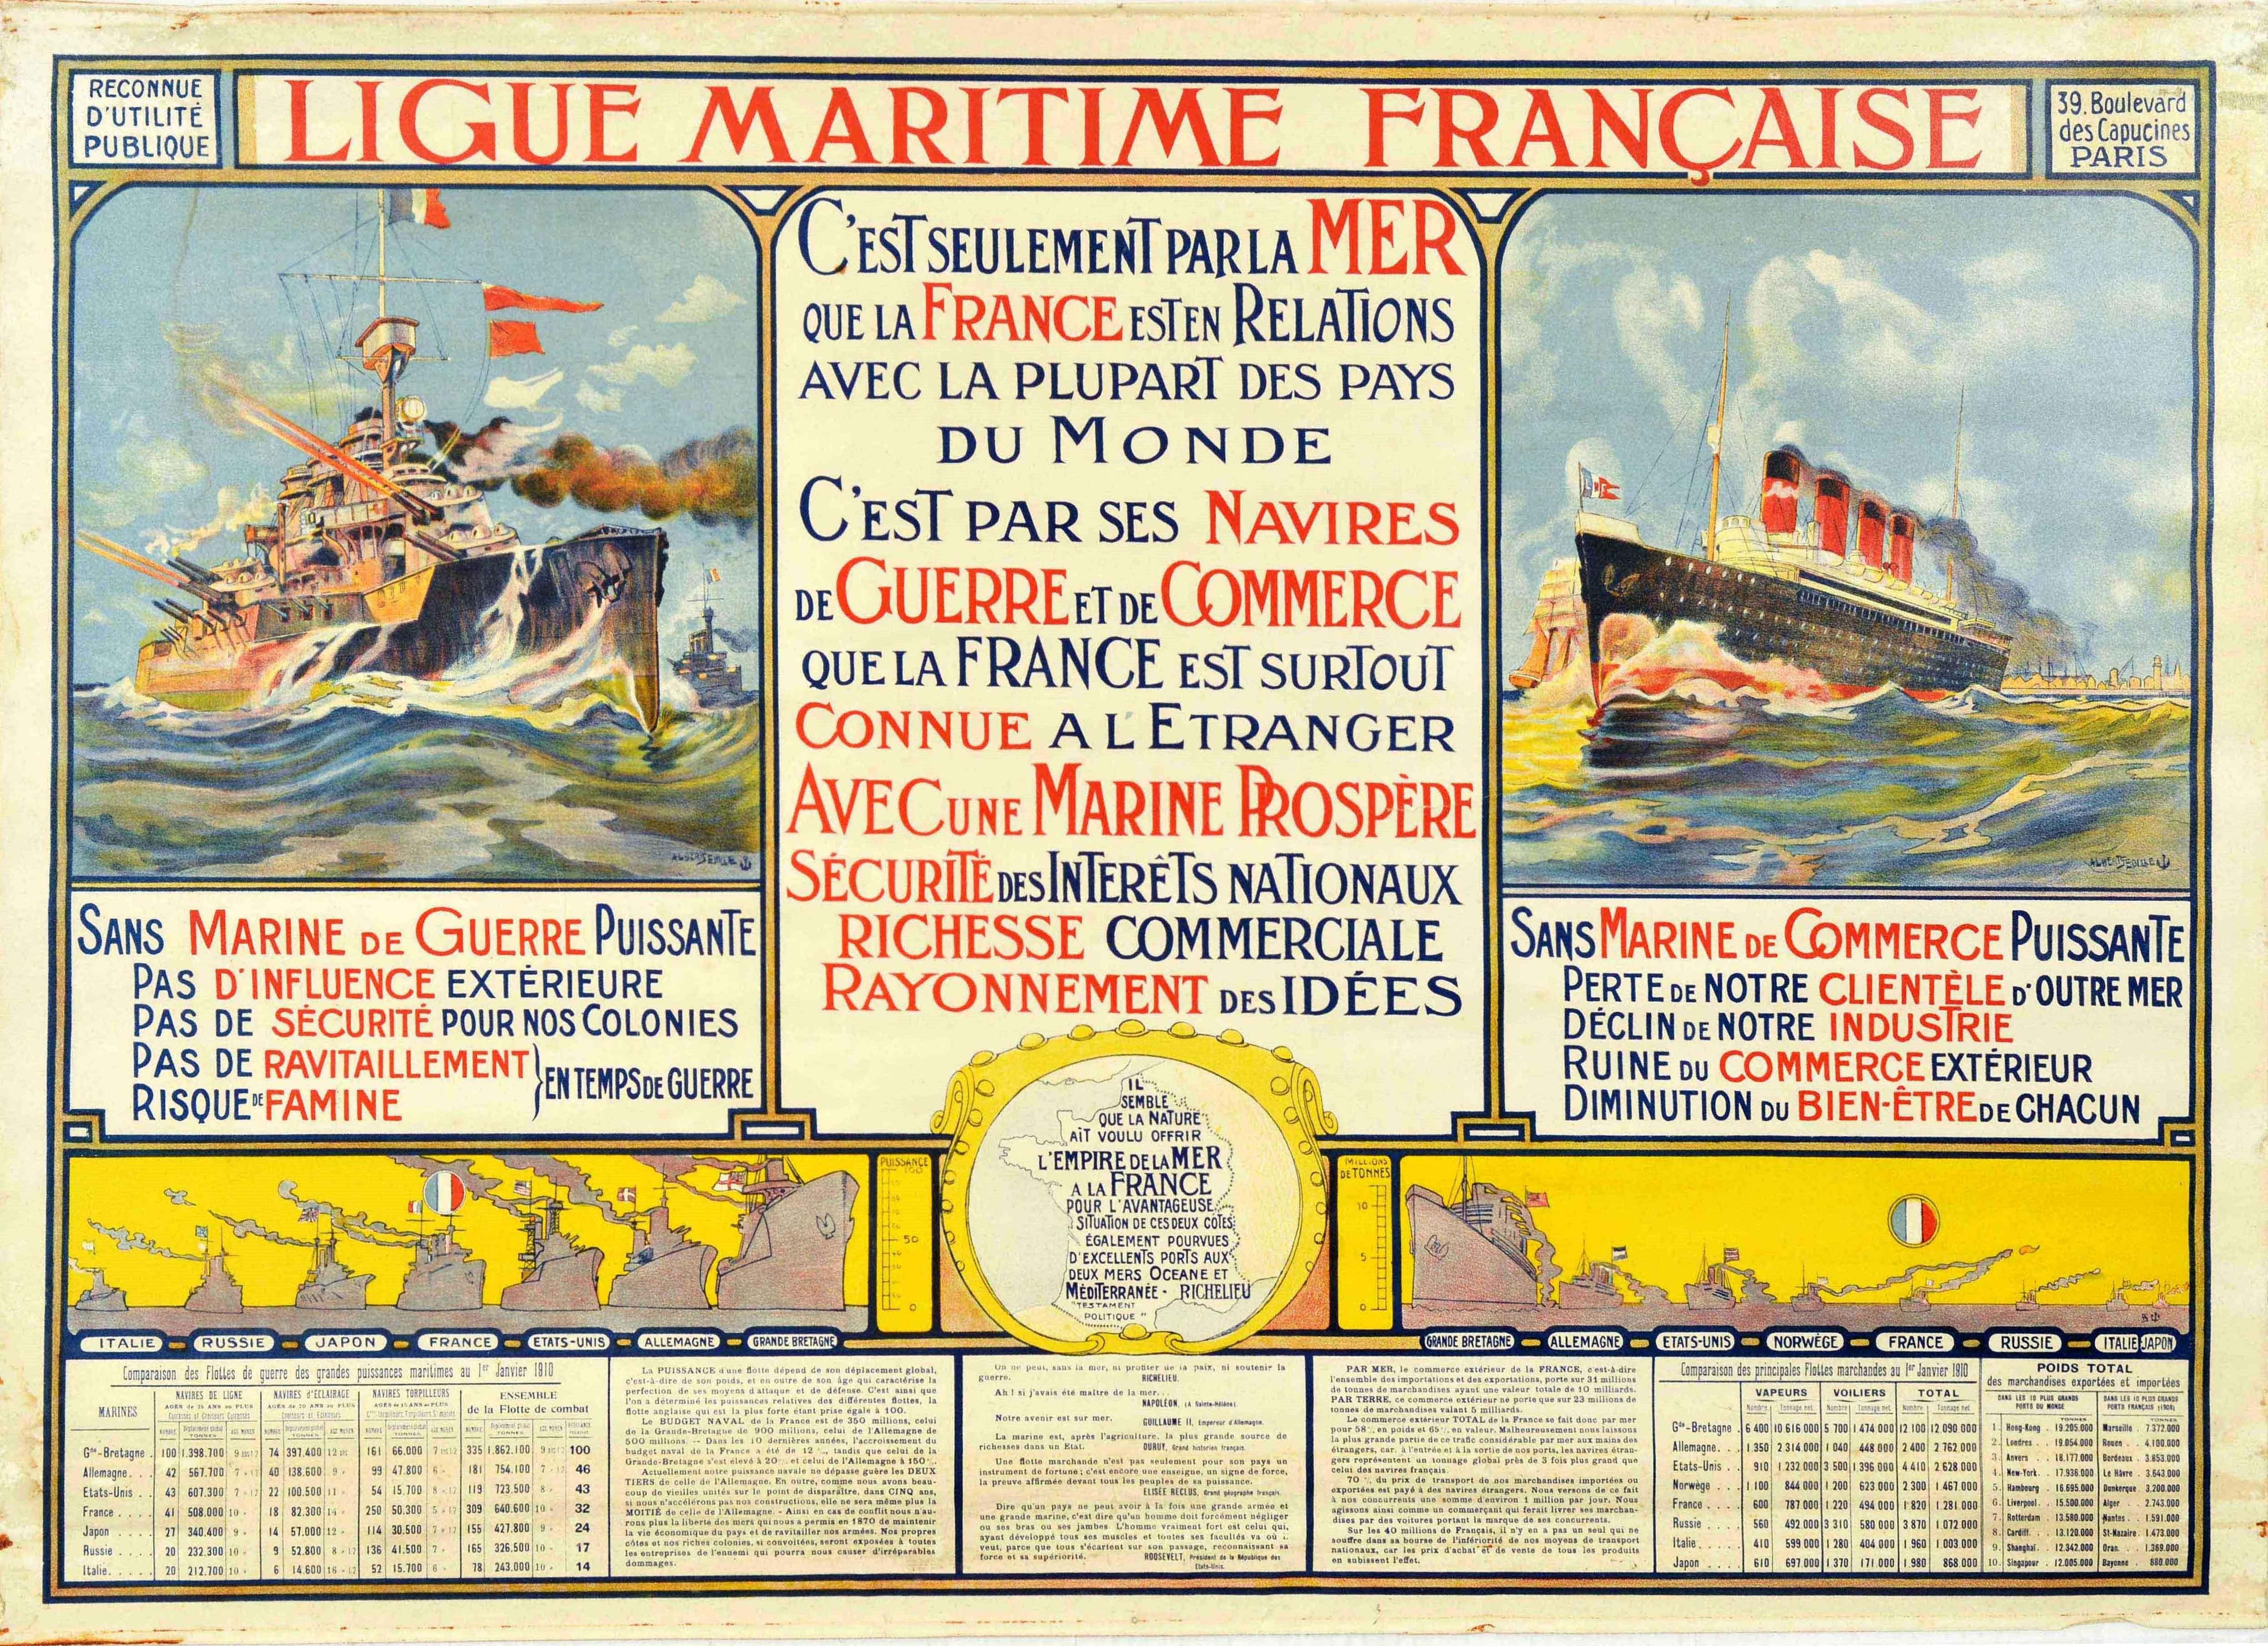 Originales antikes Plakat für die Ligue Maritime Francais / Französische Seefahrtsliga mit einem Kriegsschiff, das auf See Kanonen abfeuert, und einem Kreuzfahrtschiff mit den Vorteilen beider Schiffe in der Mitte - C'est seulement par la mer que la